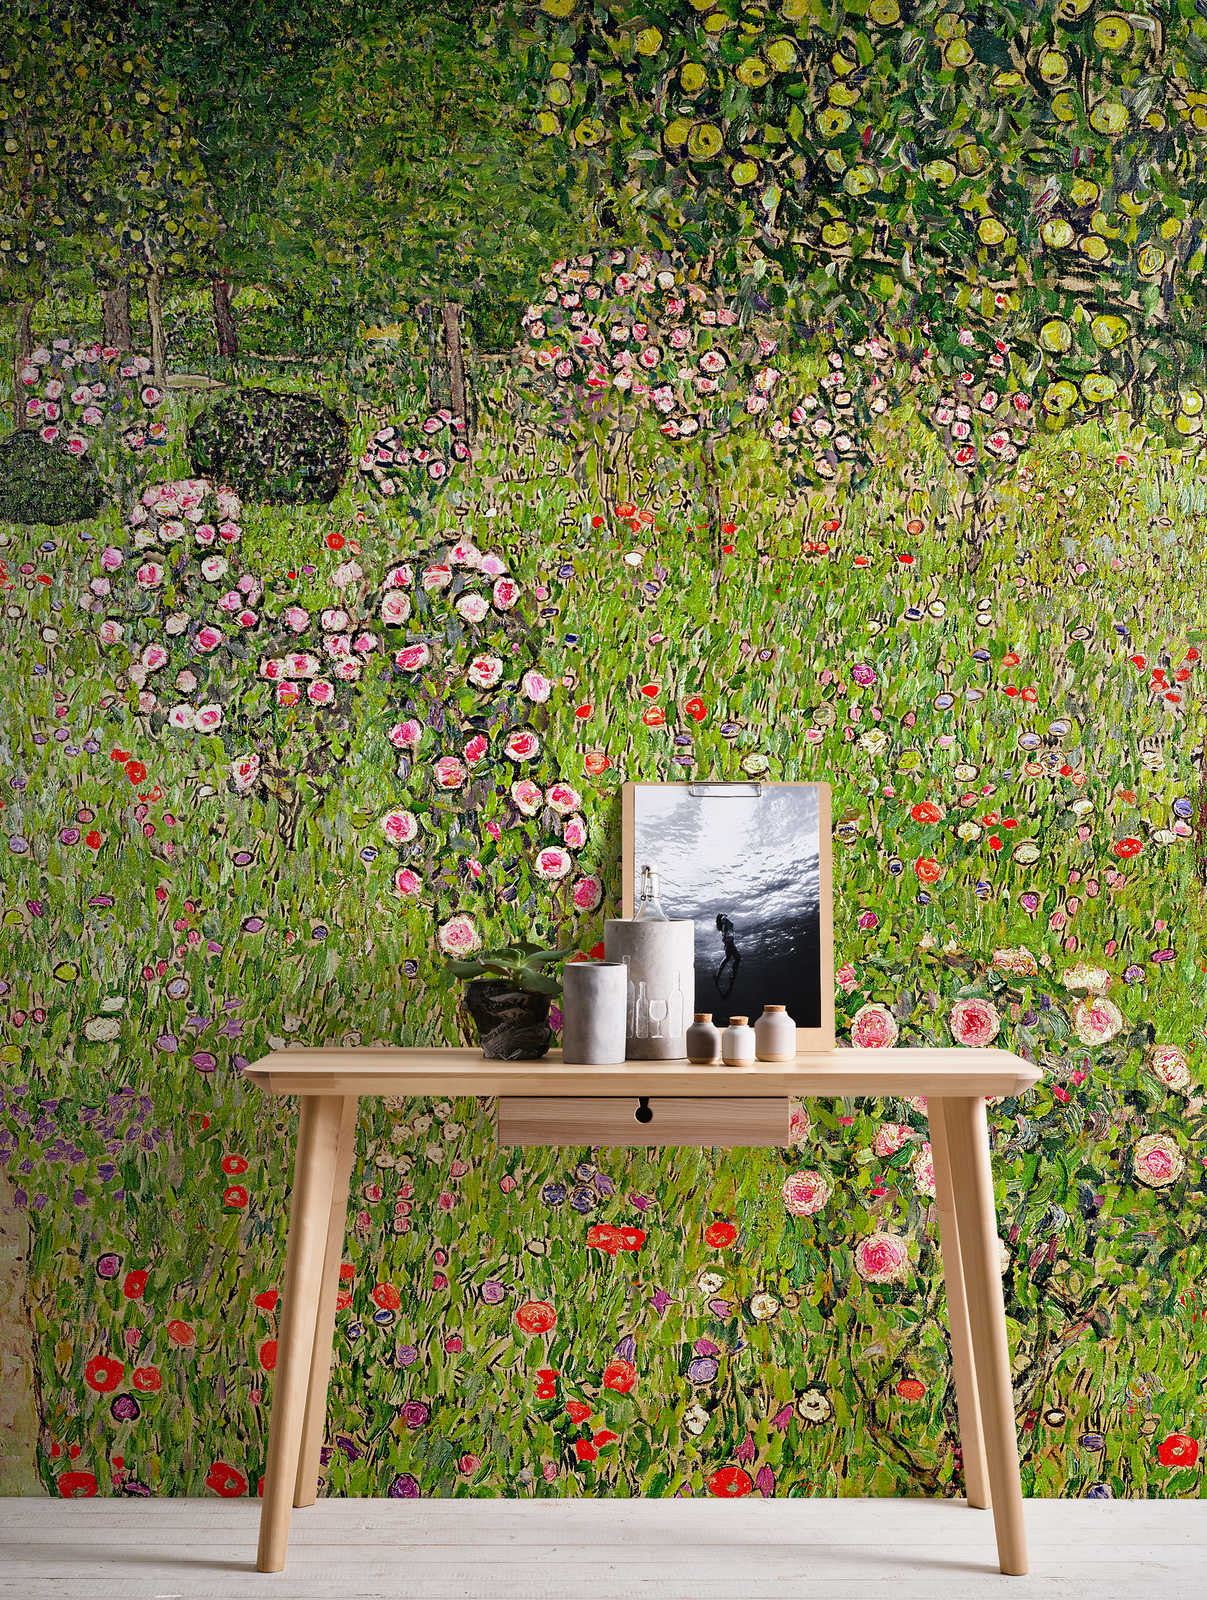             Muurschildering "Boomgaard met rozen" van Gustav Klimt
        